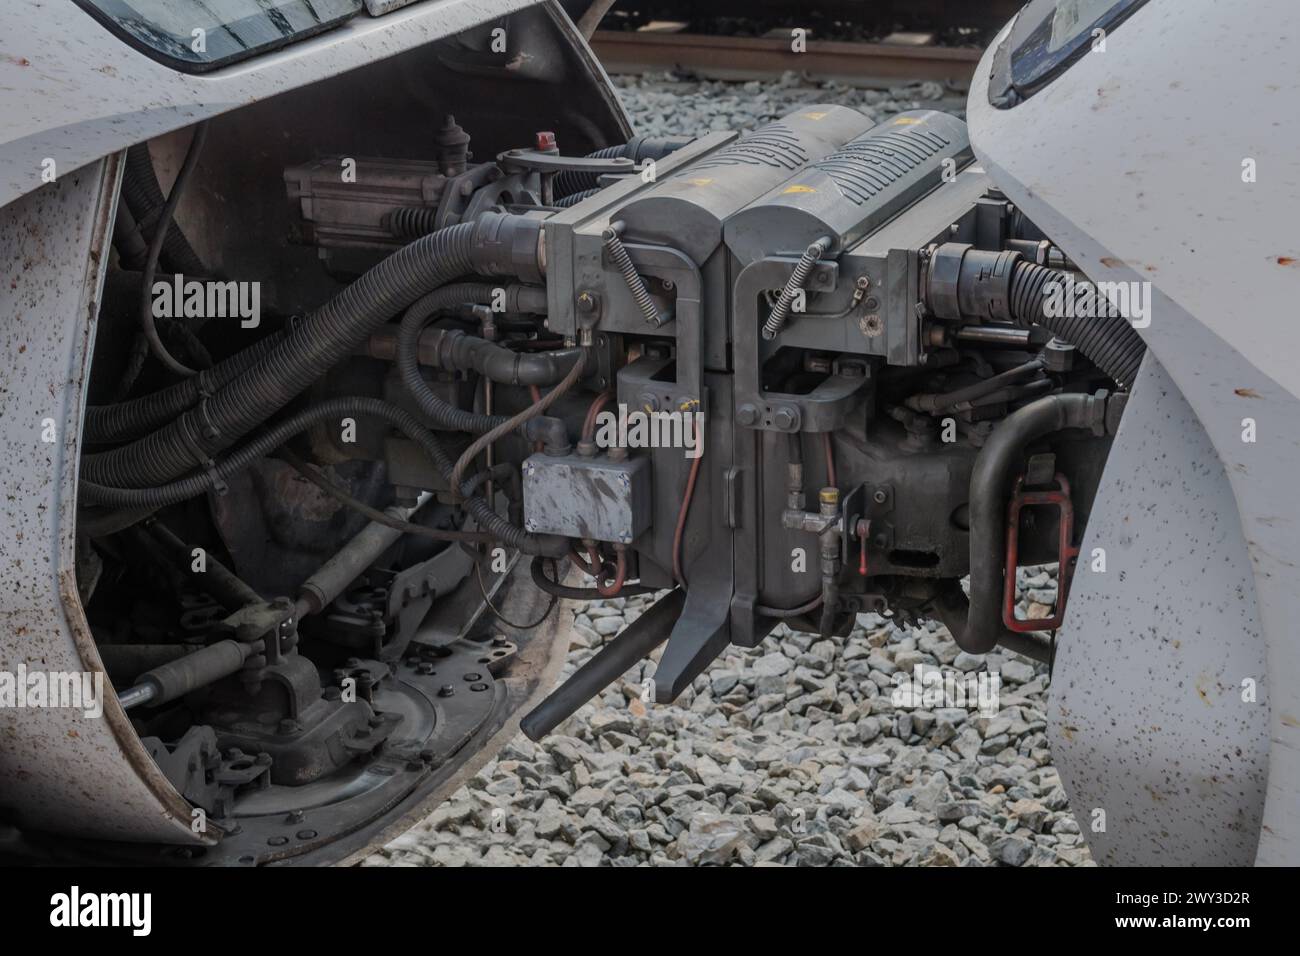 Machinerie complexe et tuyaux visibles sur le dessous d'un moteur de train, en Corée du Sud Banque D'Images